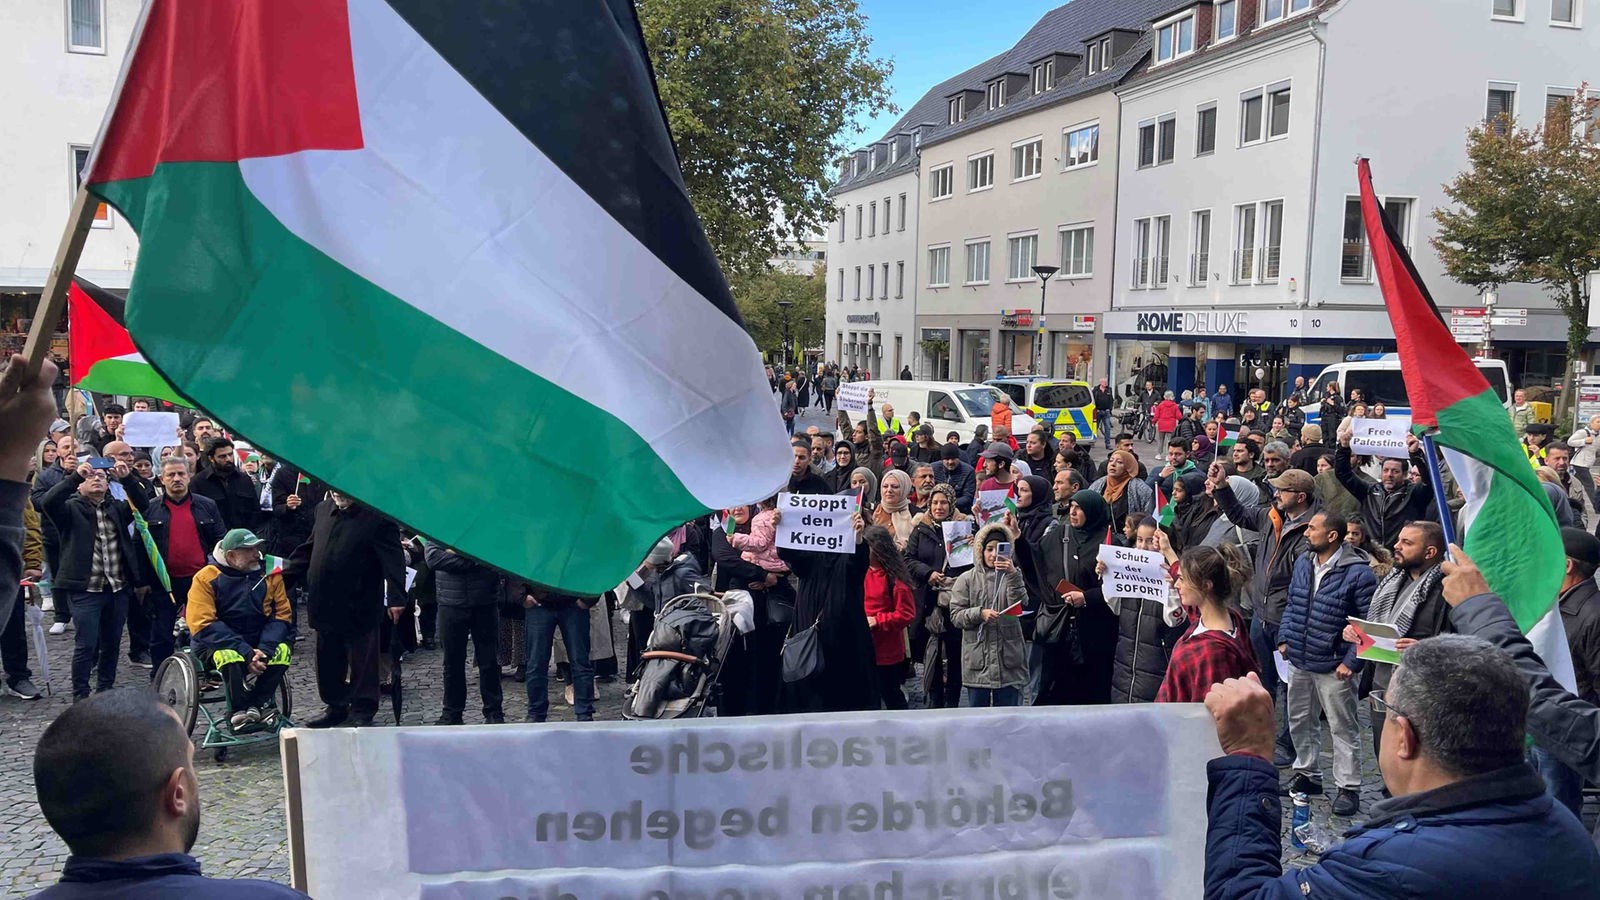 Conflicto en Oriente Medio: varias manifestaciones pro palestinas en Renania del Norte-Westfalia; todas pacíficas hasta ahora – Noticias – WDR – Noticias